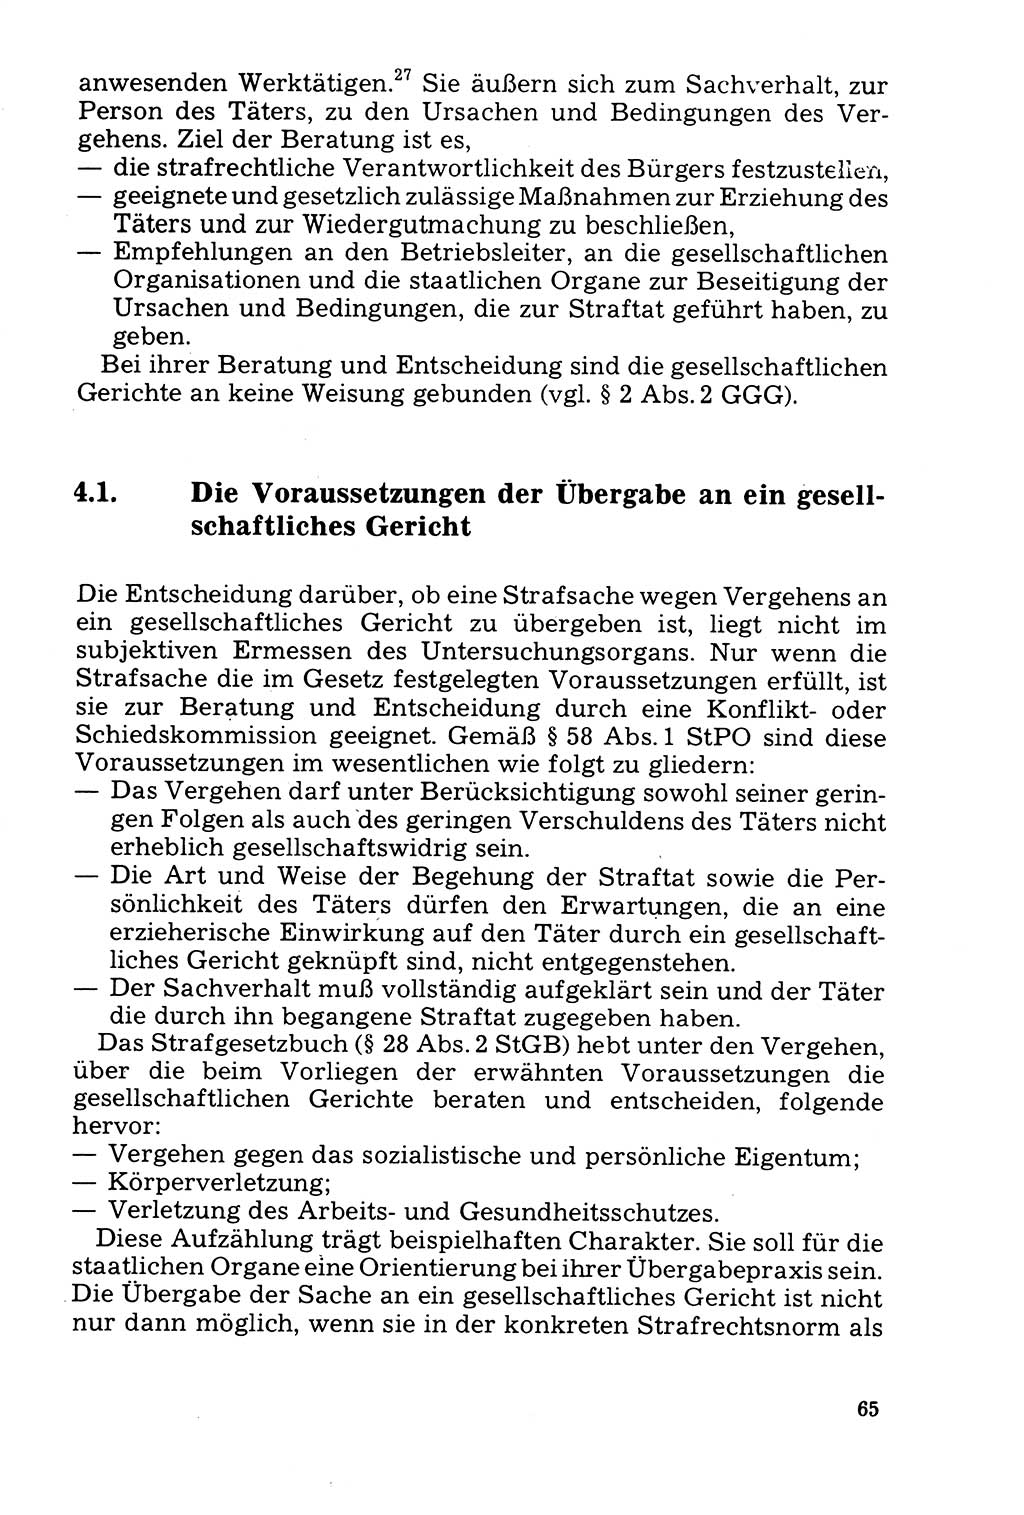 Der Abschluß des Ermittlungsverfahrens [Deutsche Demokratische Republik (DDR)] 1978, Seite 65 (Abschl. EV DDR 1978, S. 65)